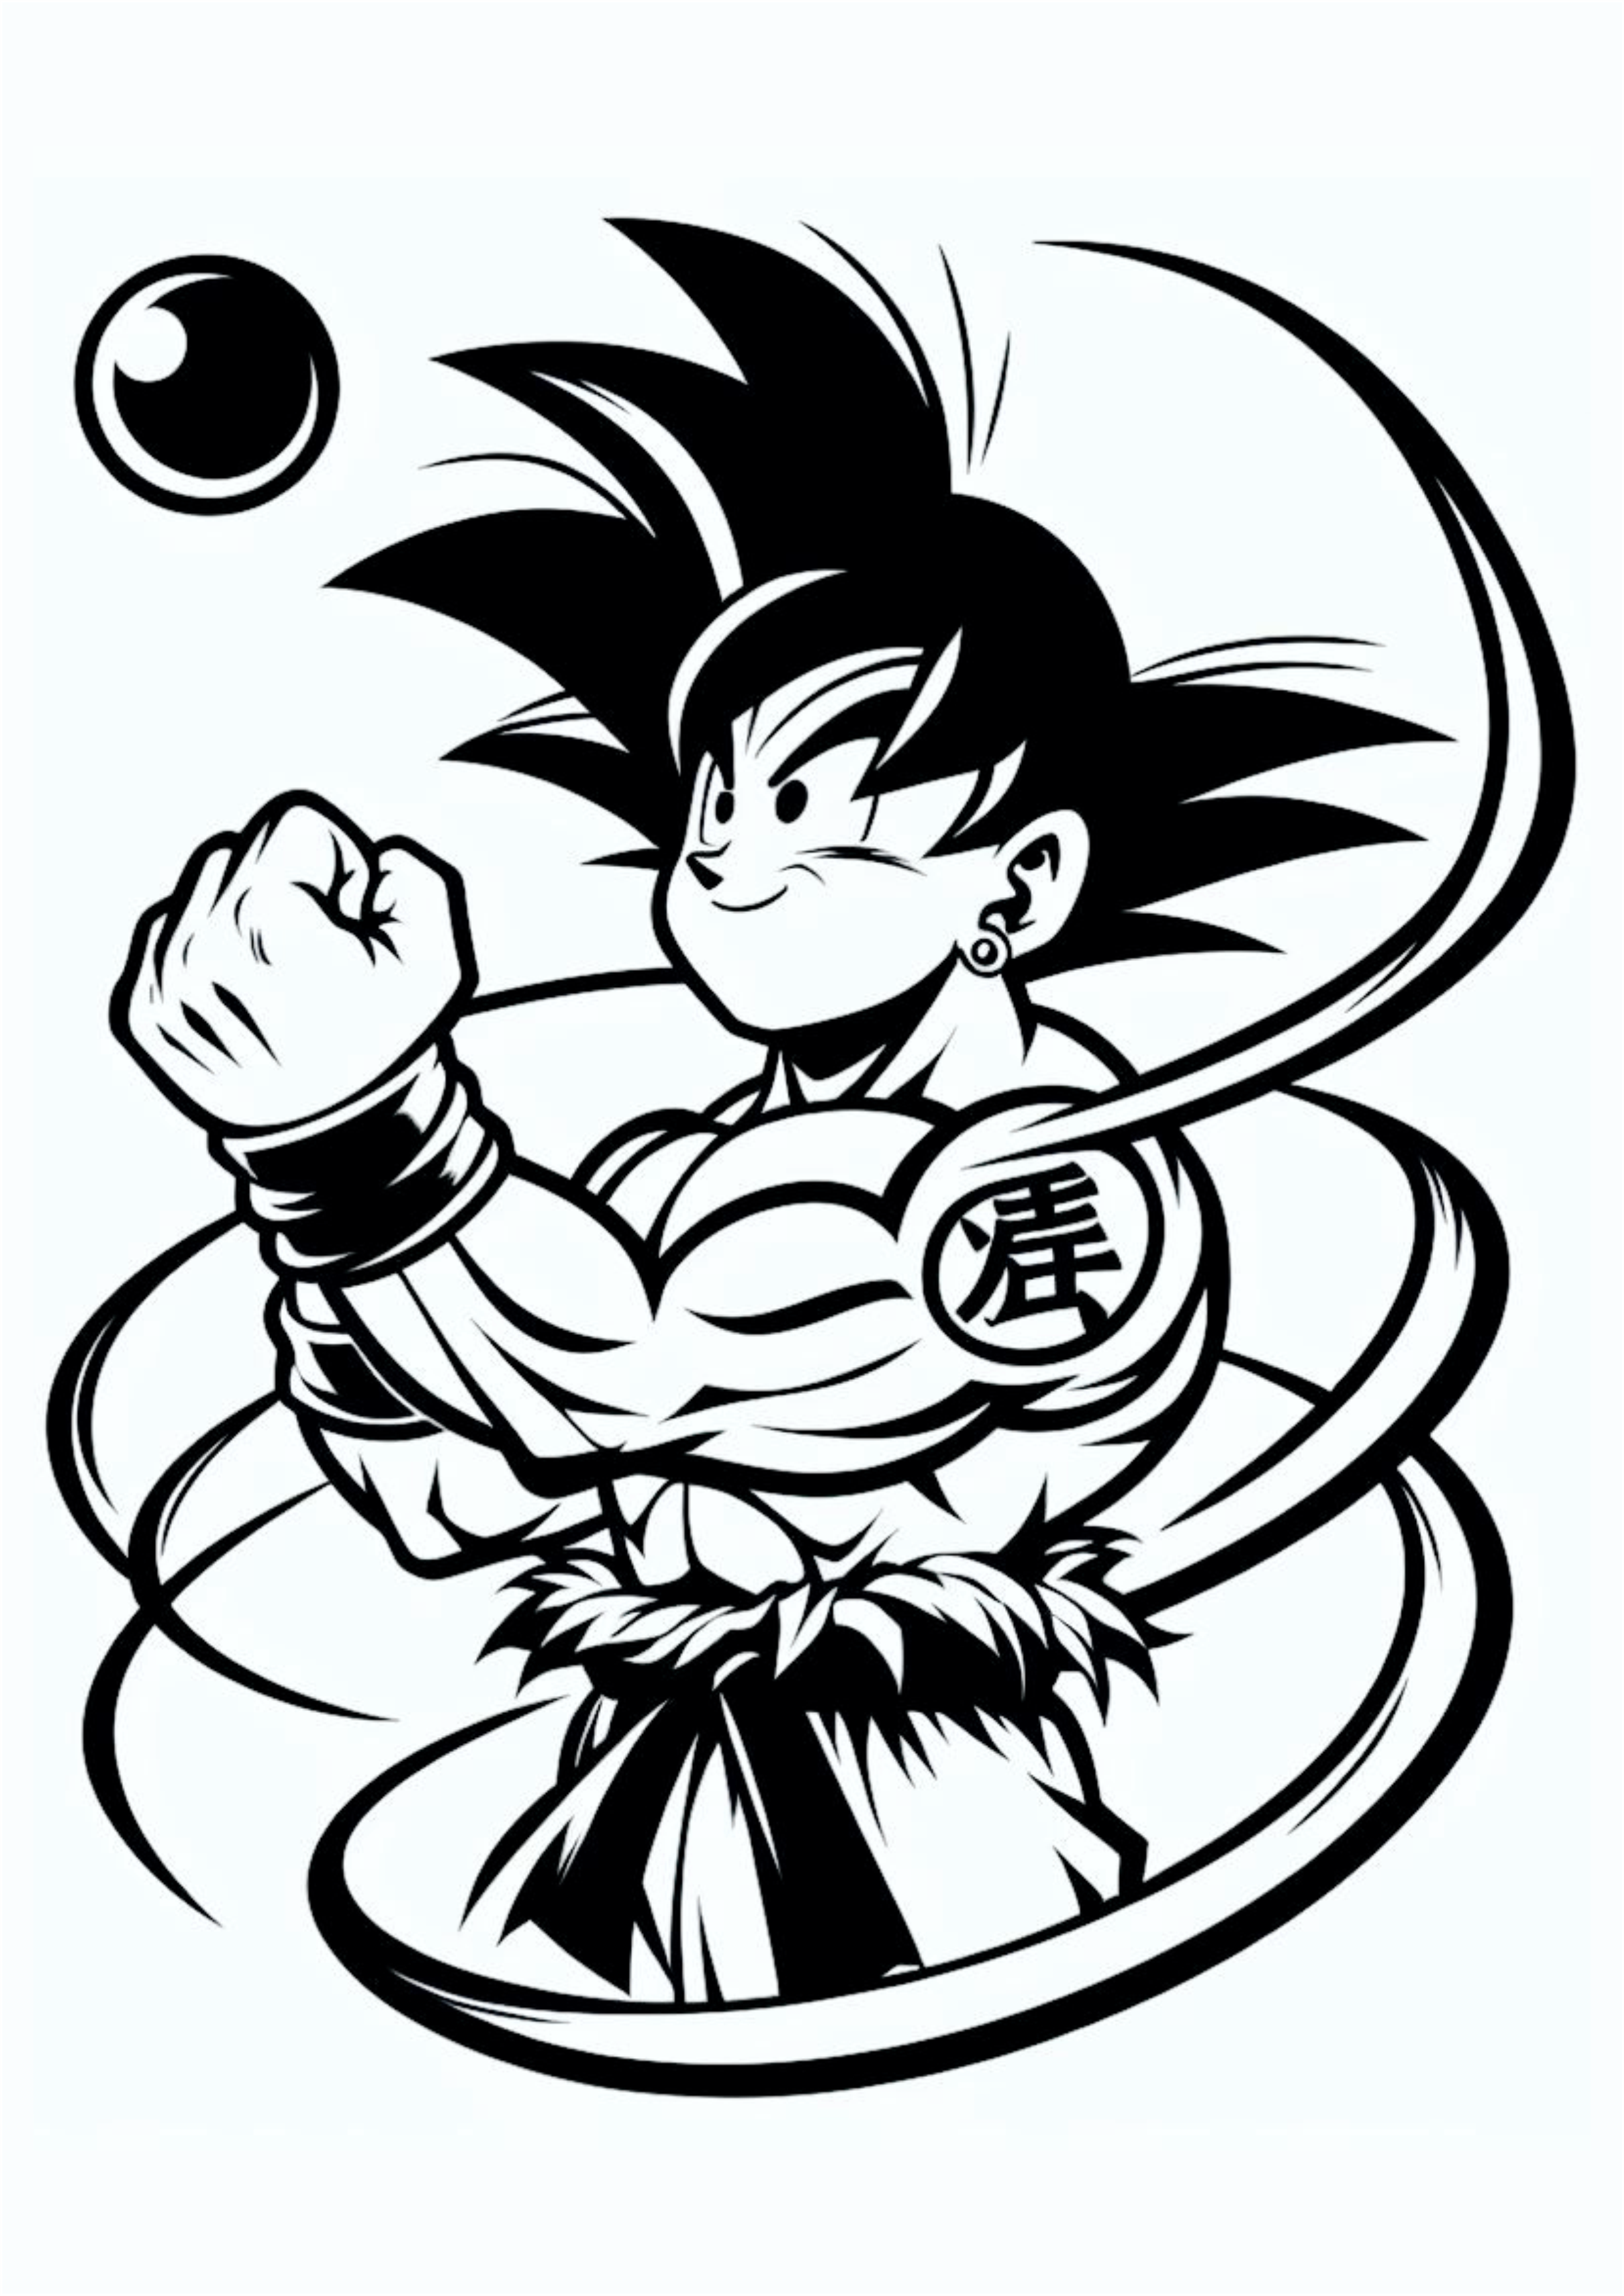 Dragon ball z ideias para tatuagem Goku desenho png